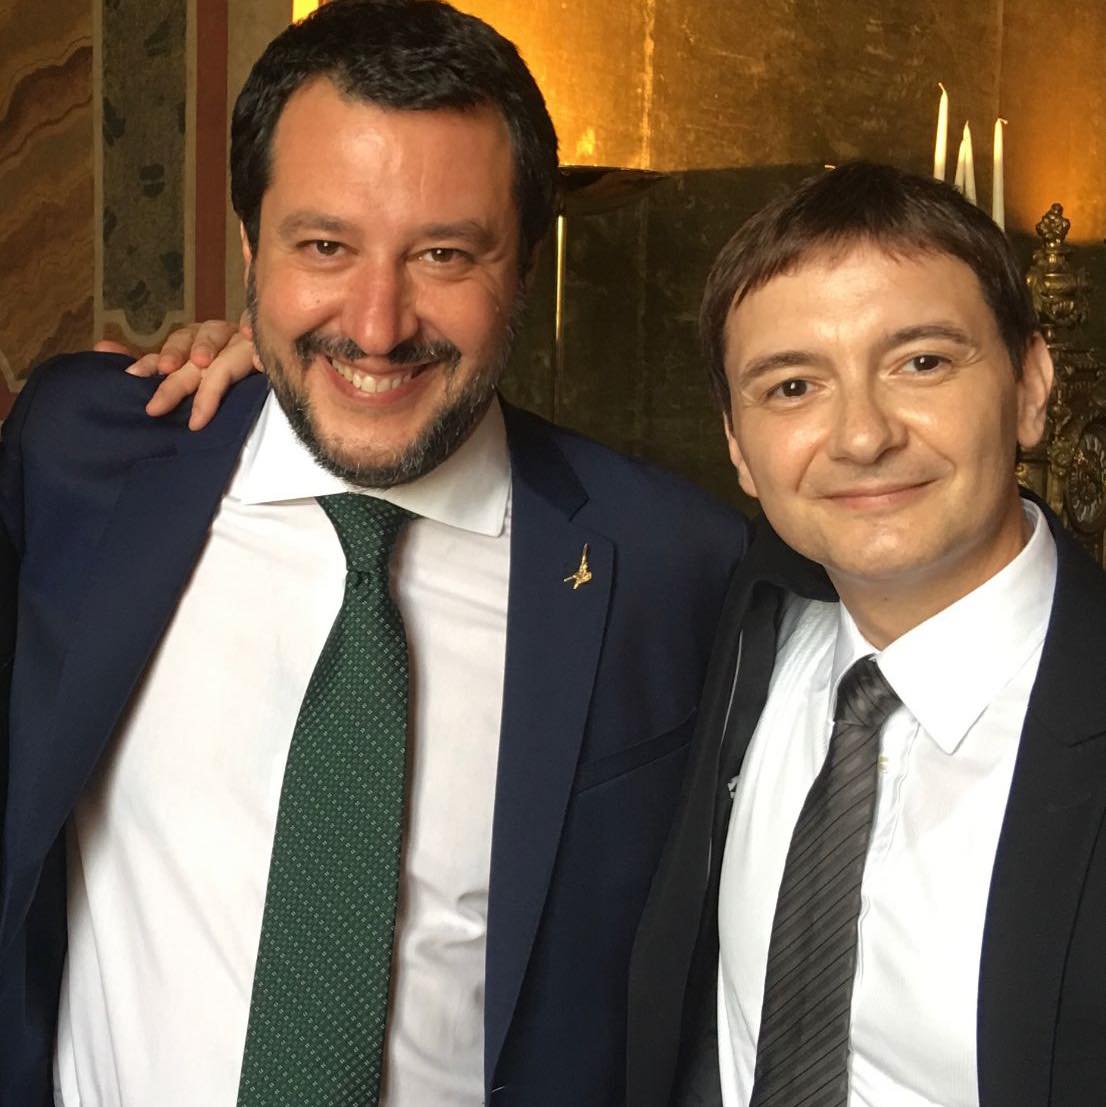 Salvini pretende le scuse per il suo “amico” Morisi, ma lui non ha mai chiesto scusa a Ilaria Cucchi o alle persone straniere